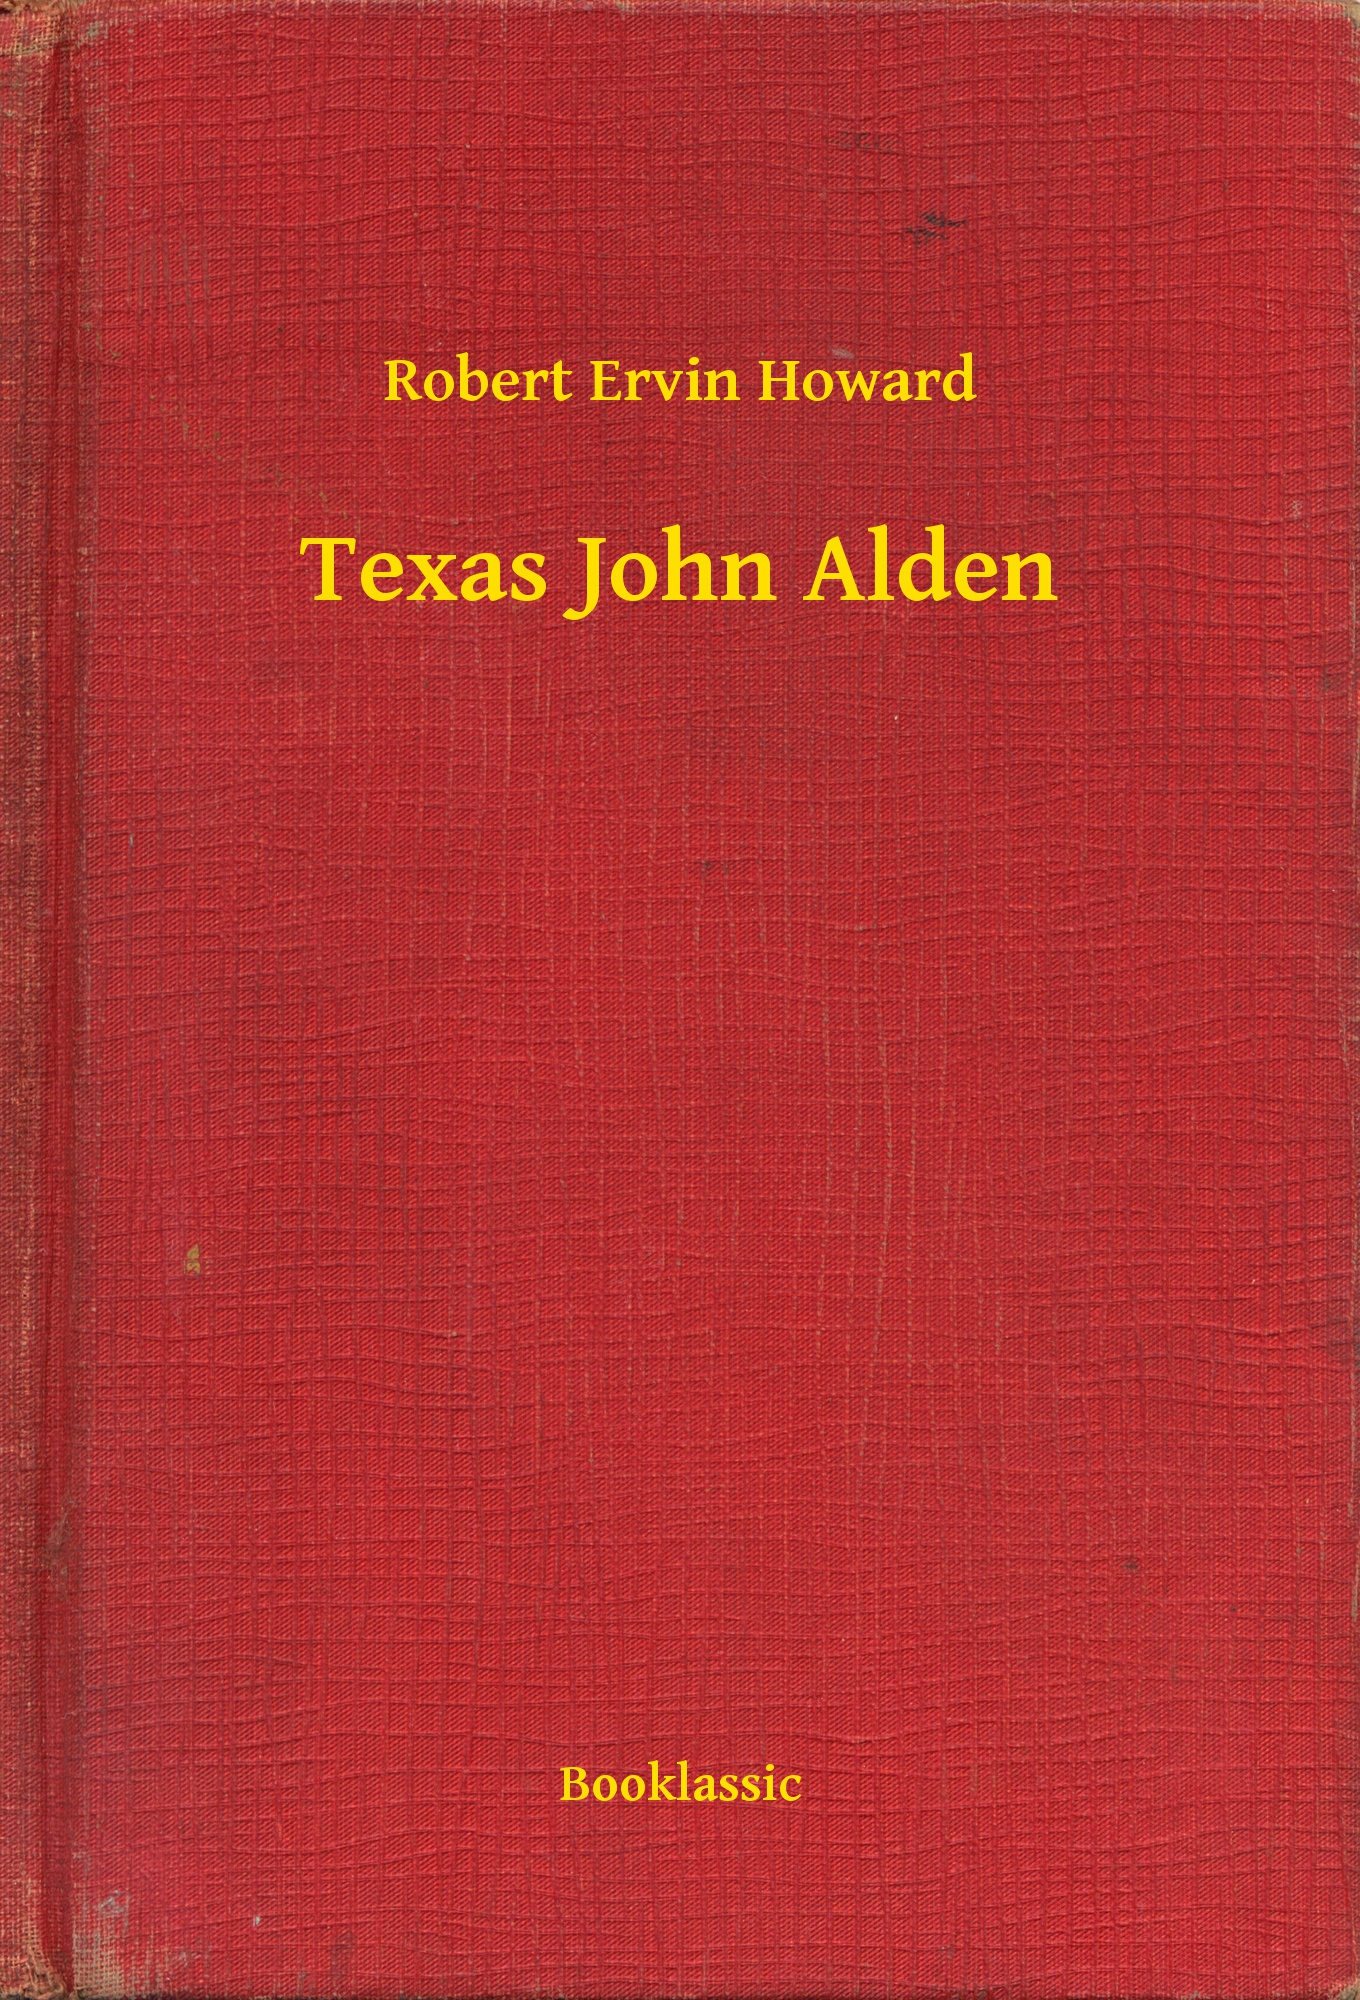 Texas John Alden